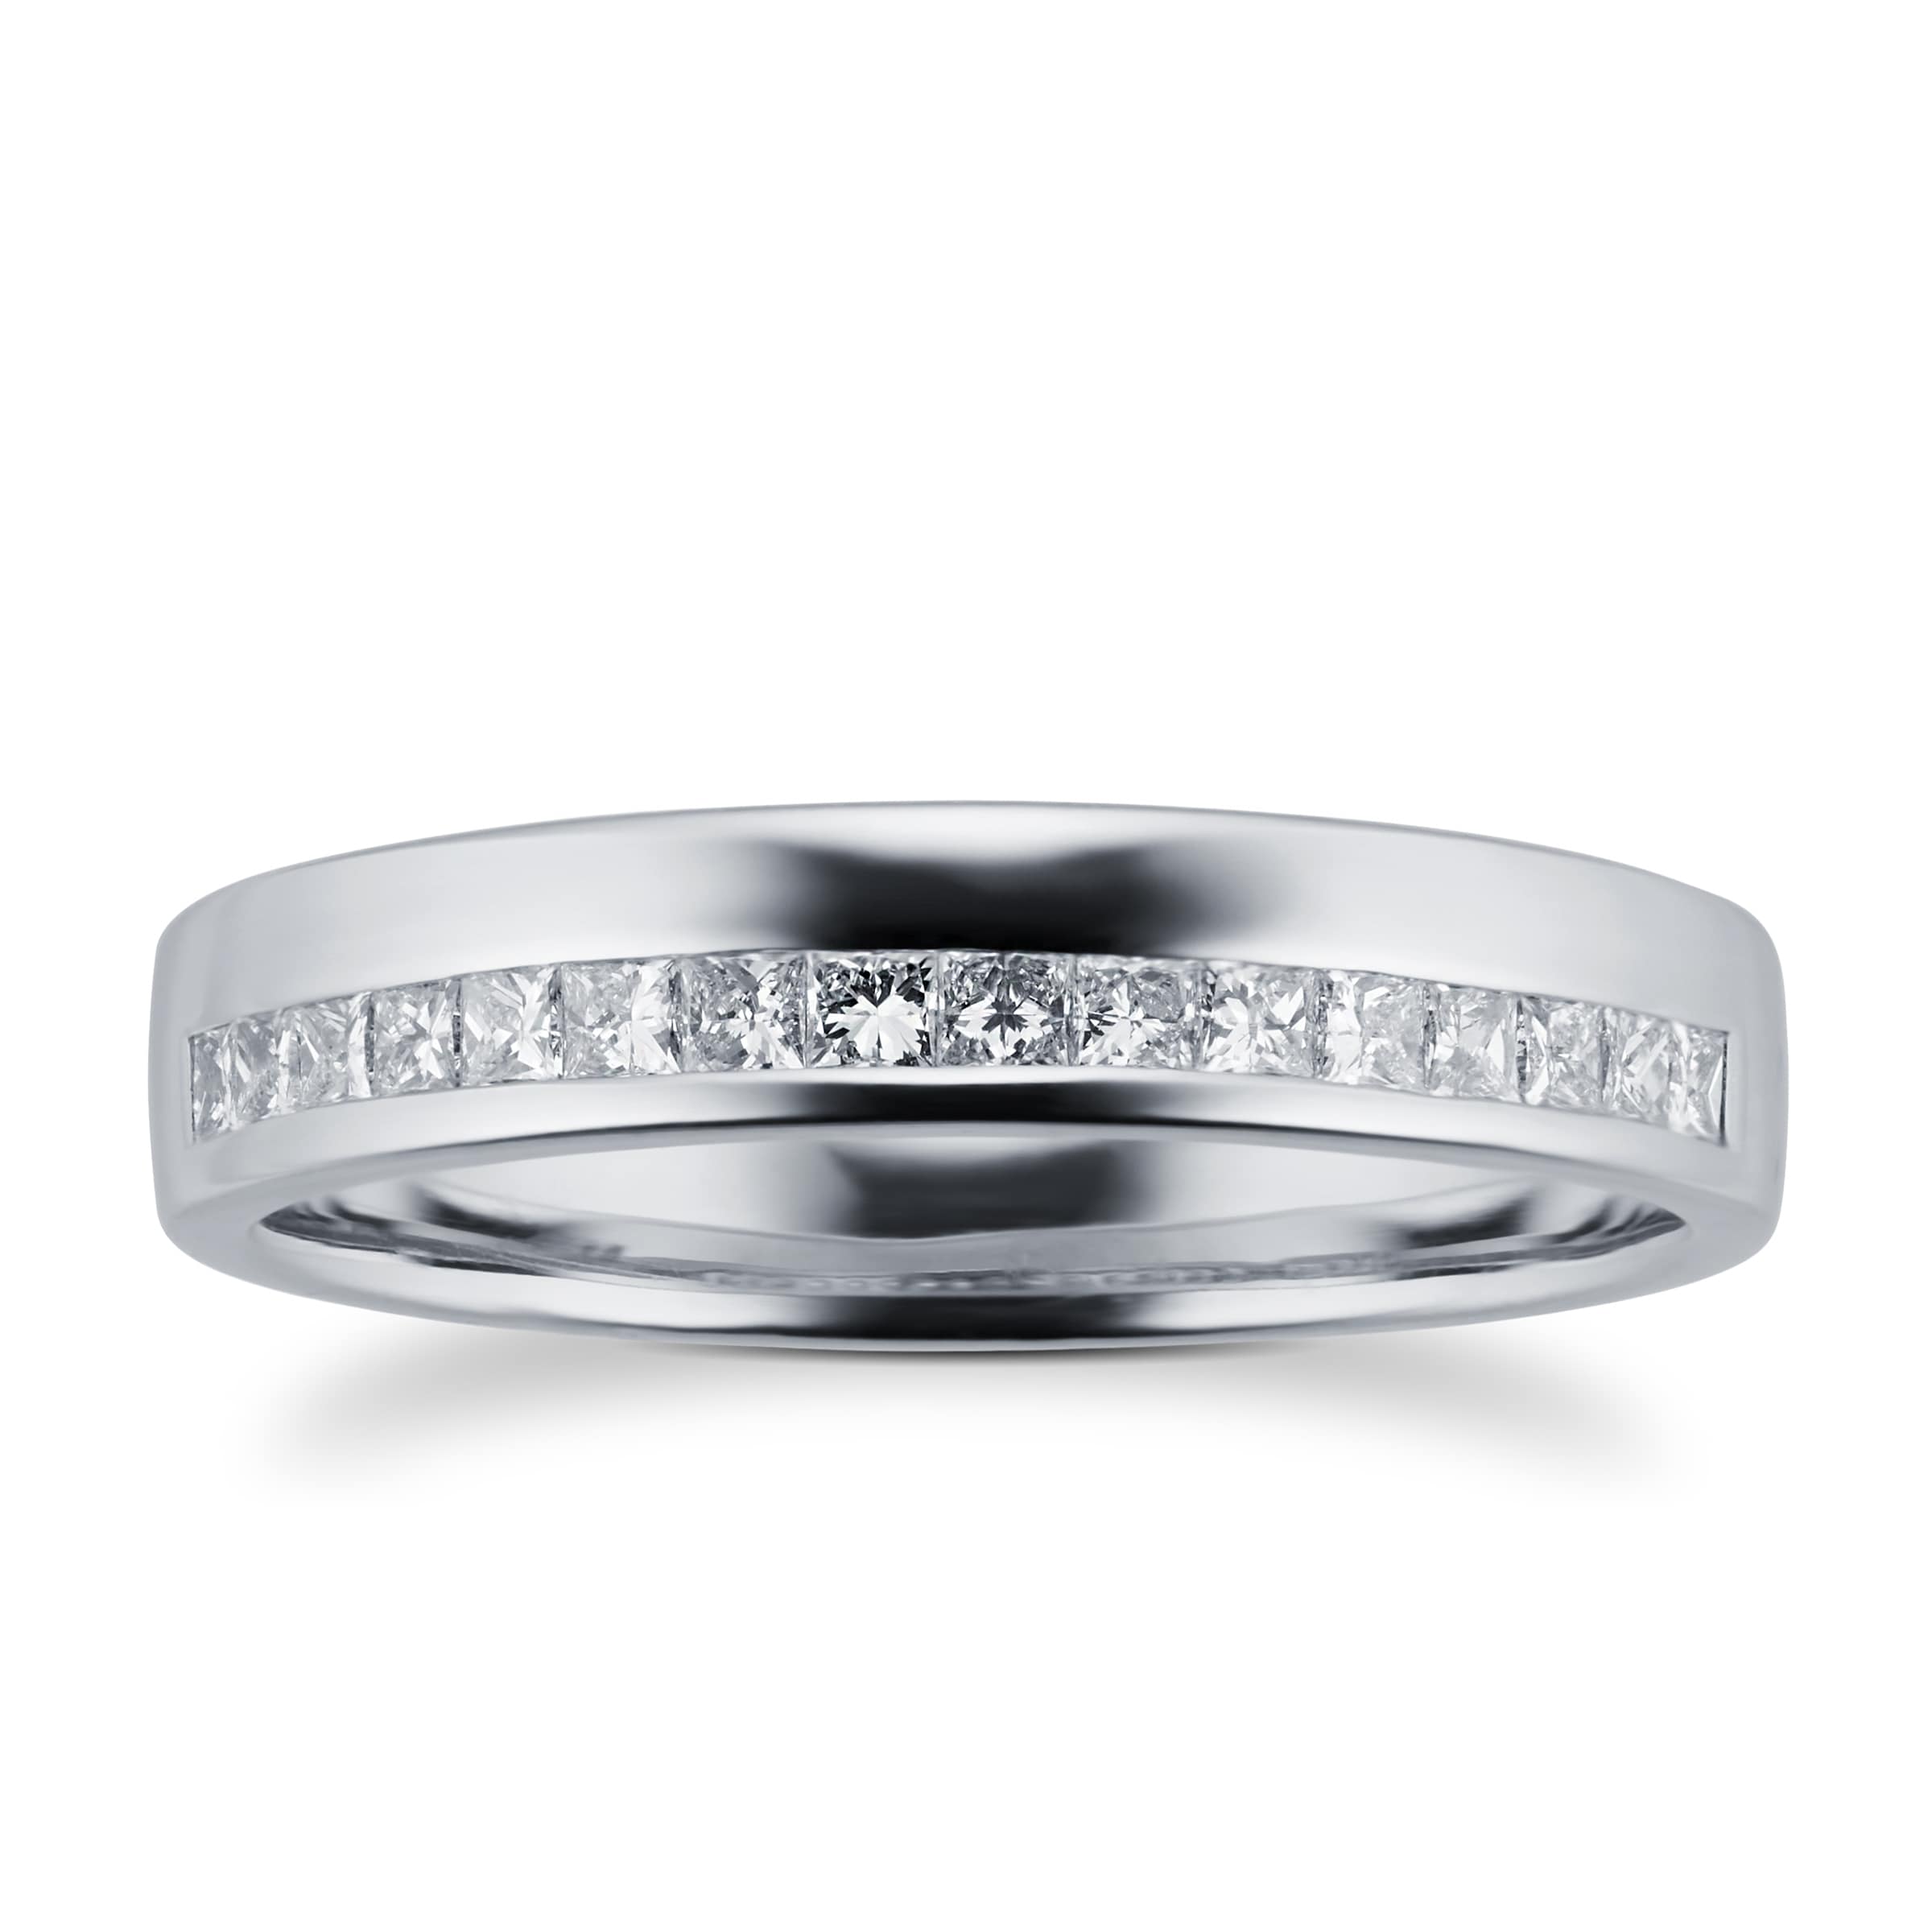 Princess Cut 0.33 Total Carat Weight Diamond Ladies Wedding Ring Set In Platinum - Ring Size O